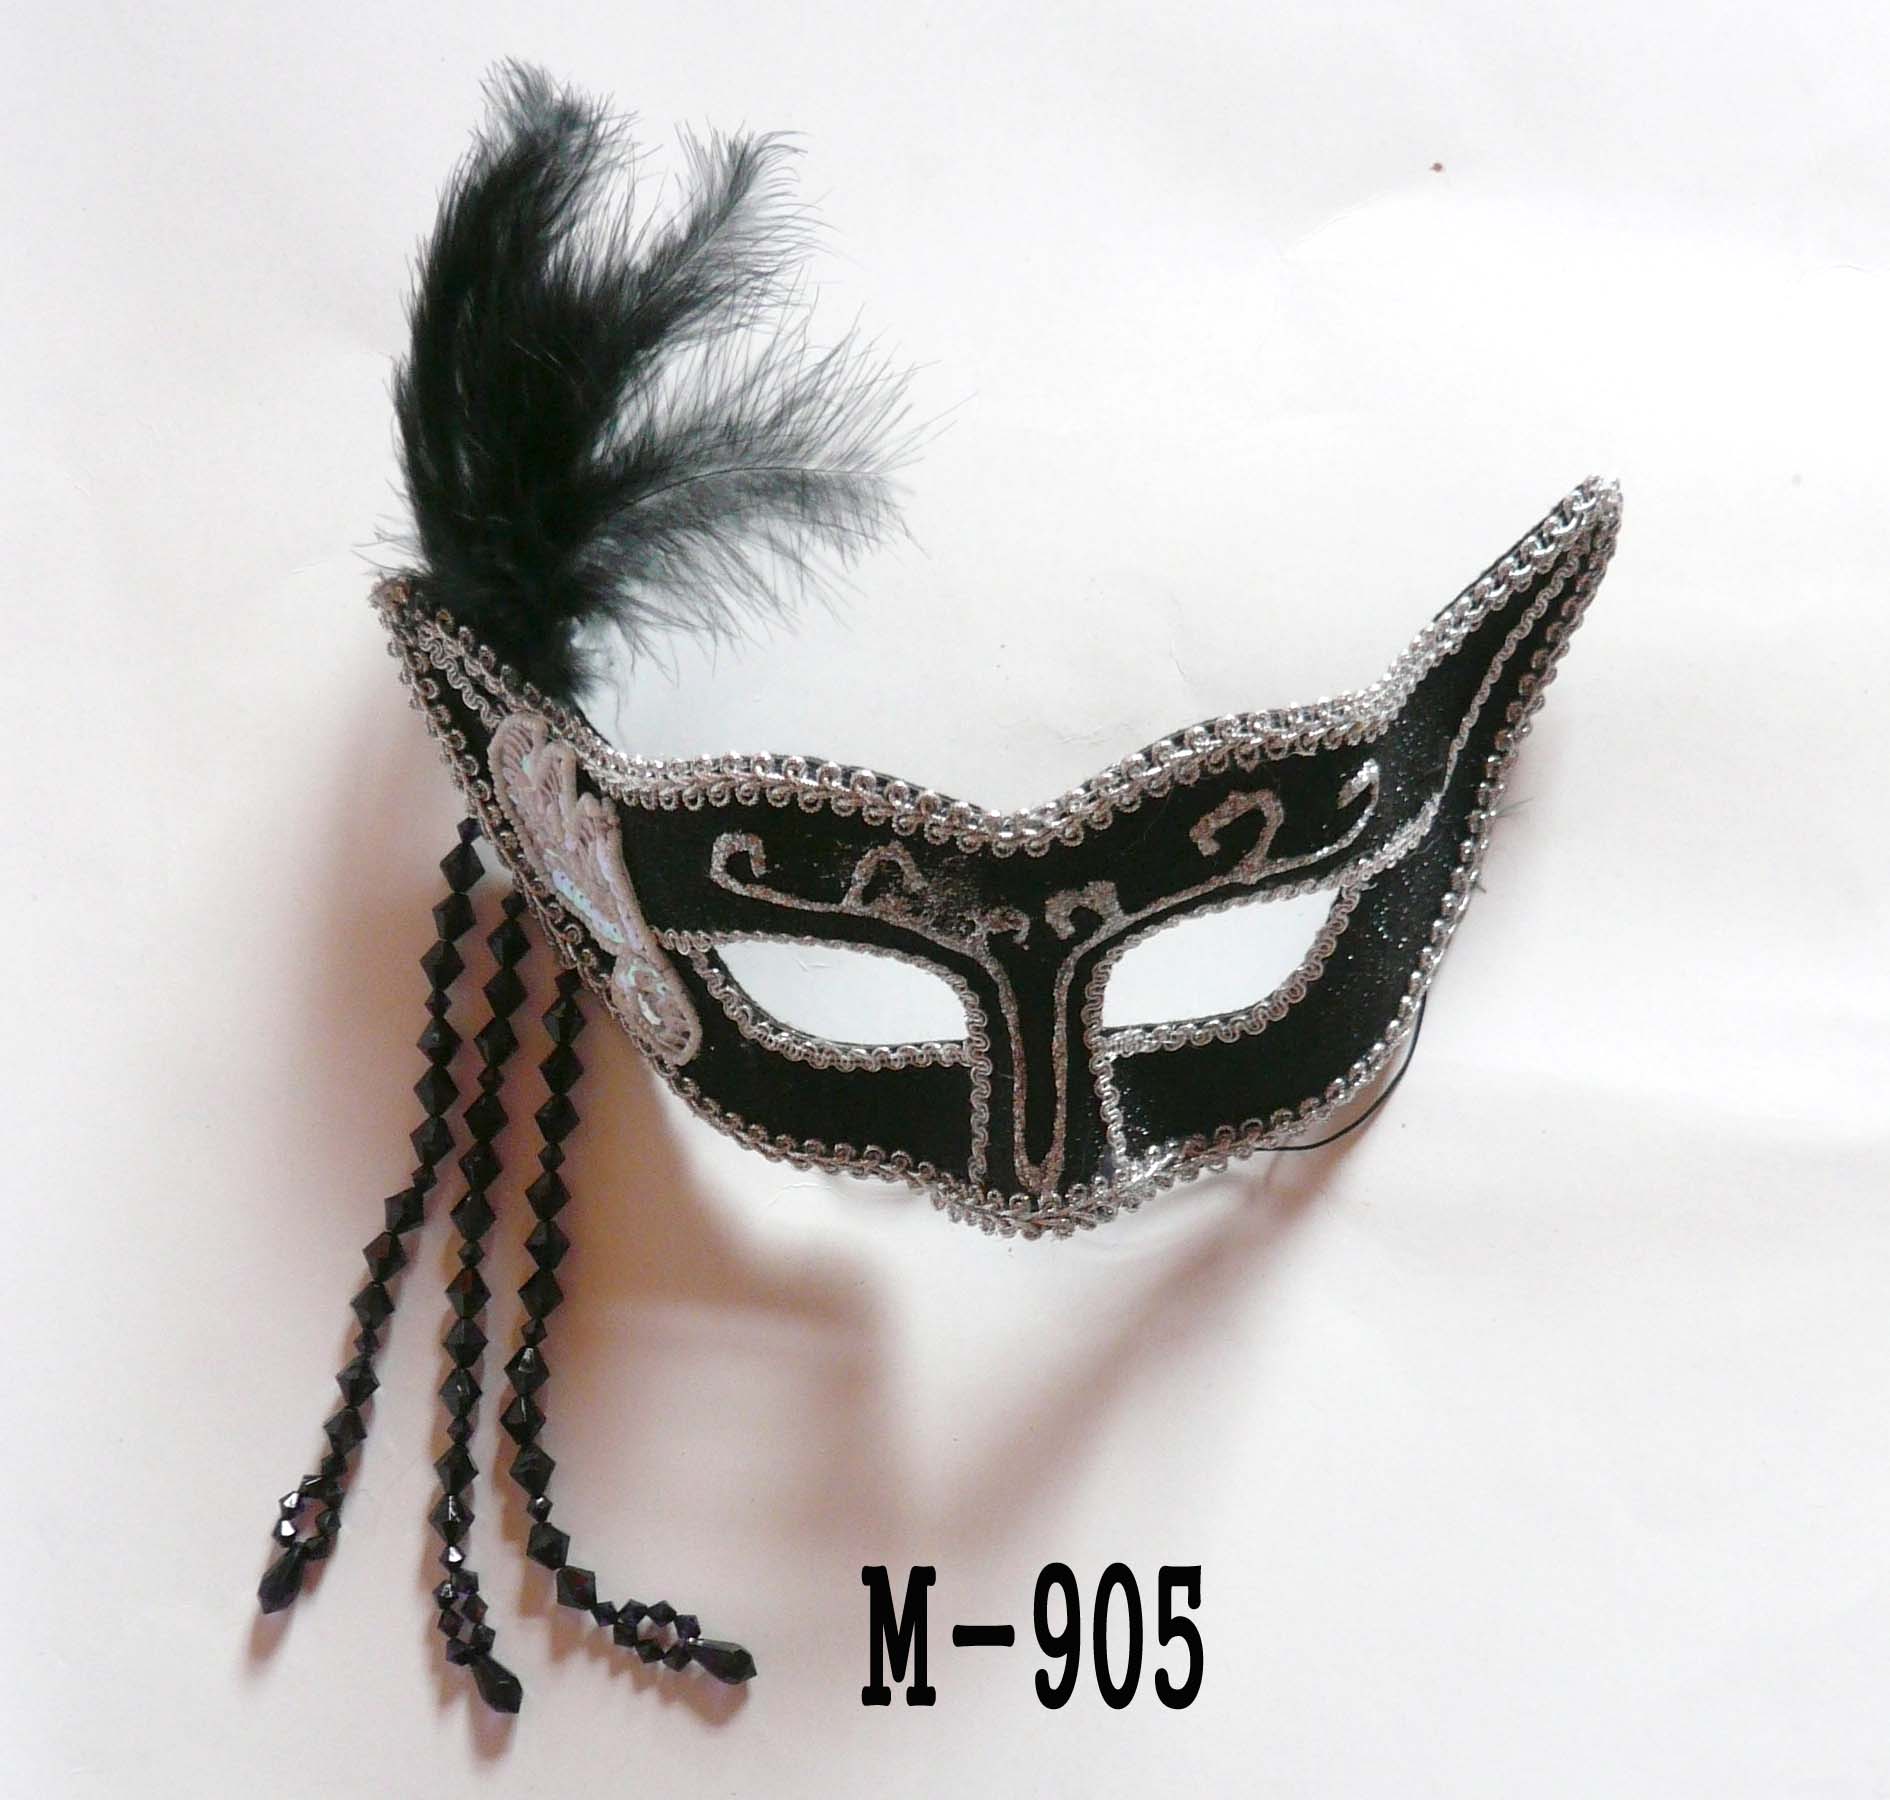  Дешевые маски из перьев для продажи - Сделано в Китае M-903